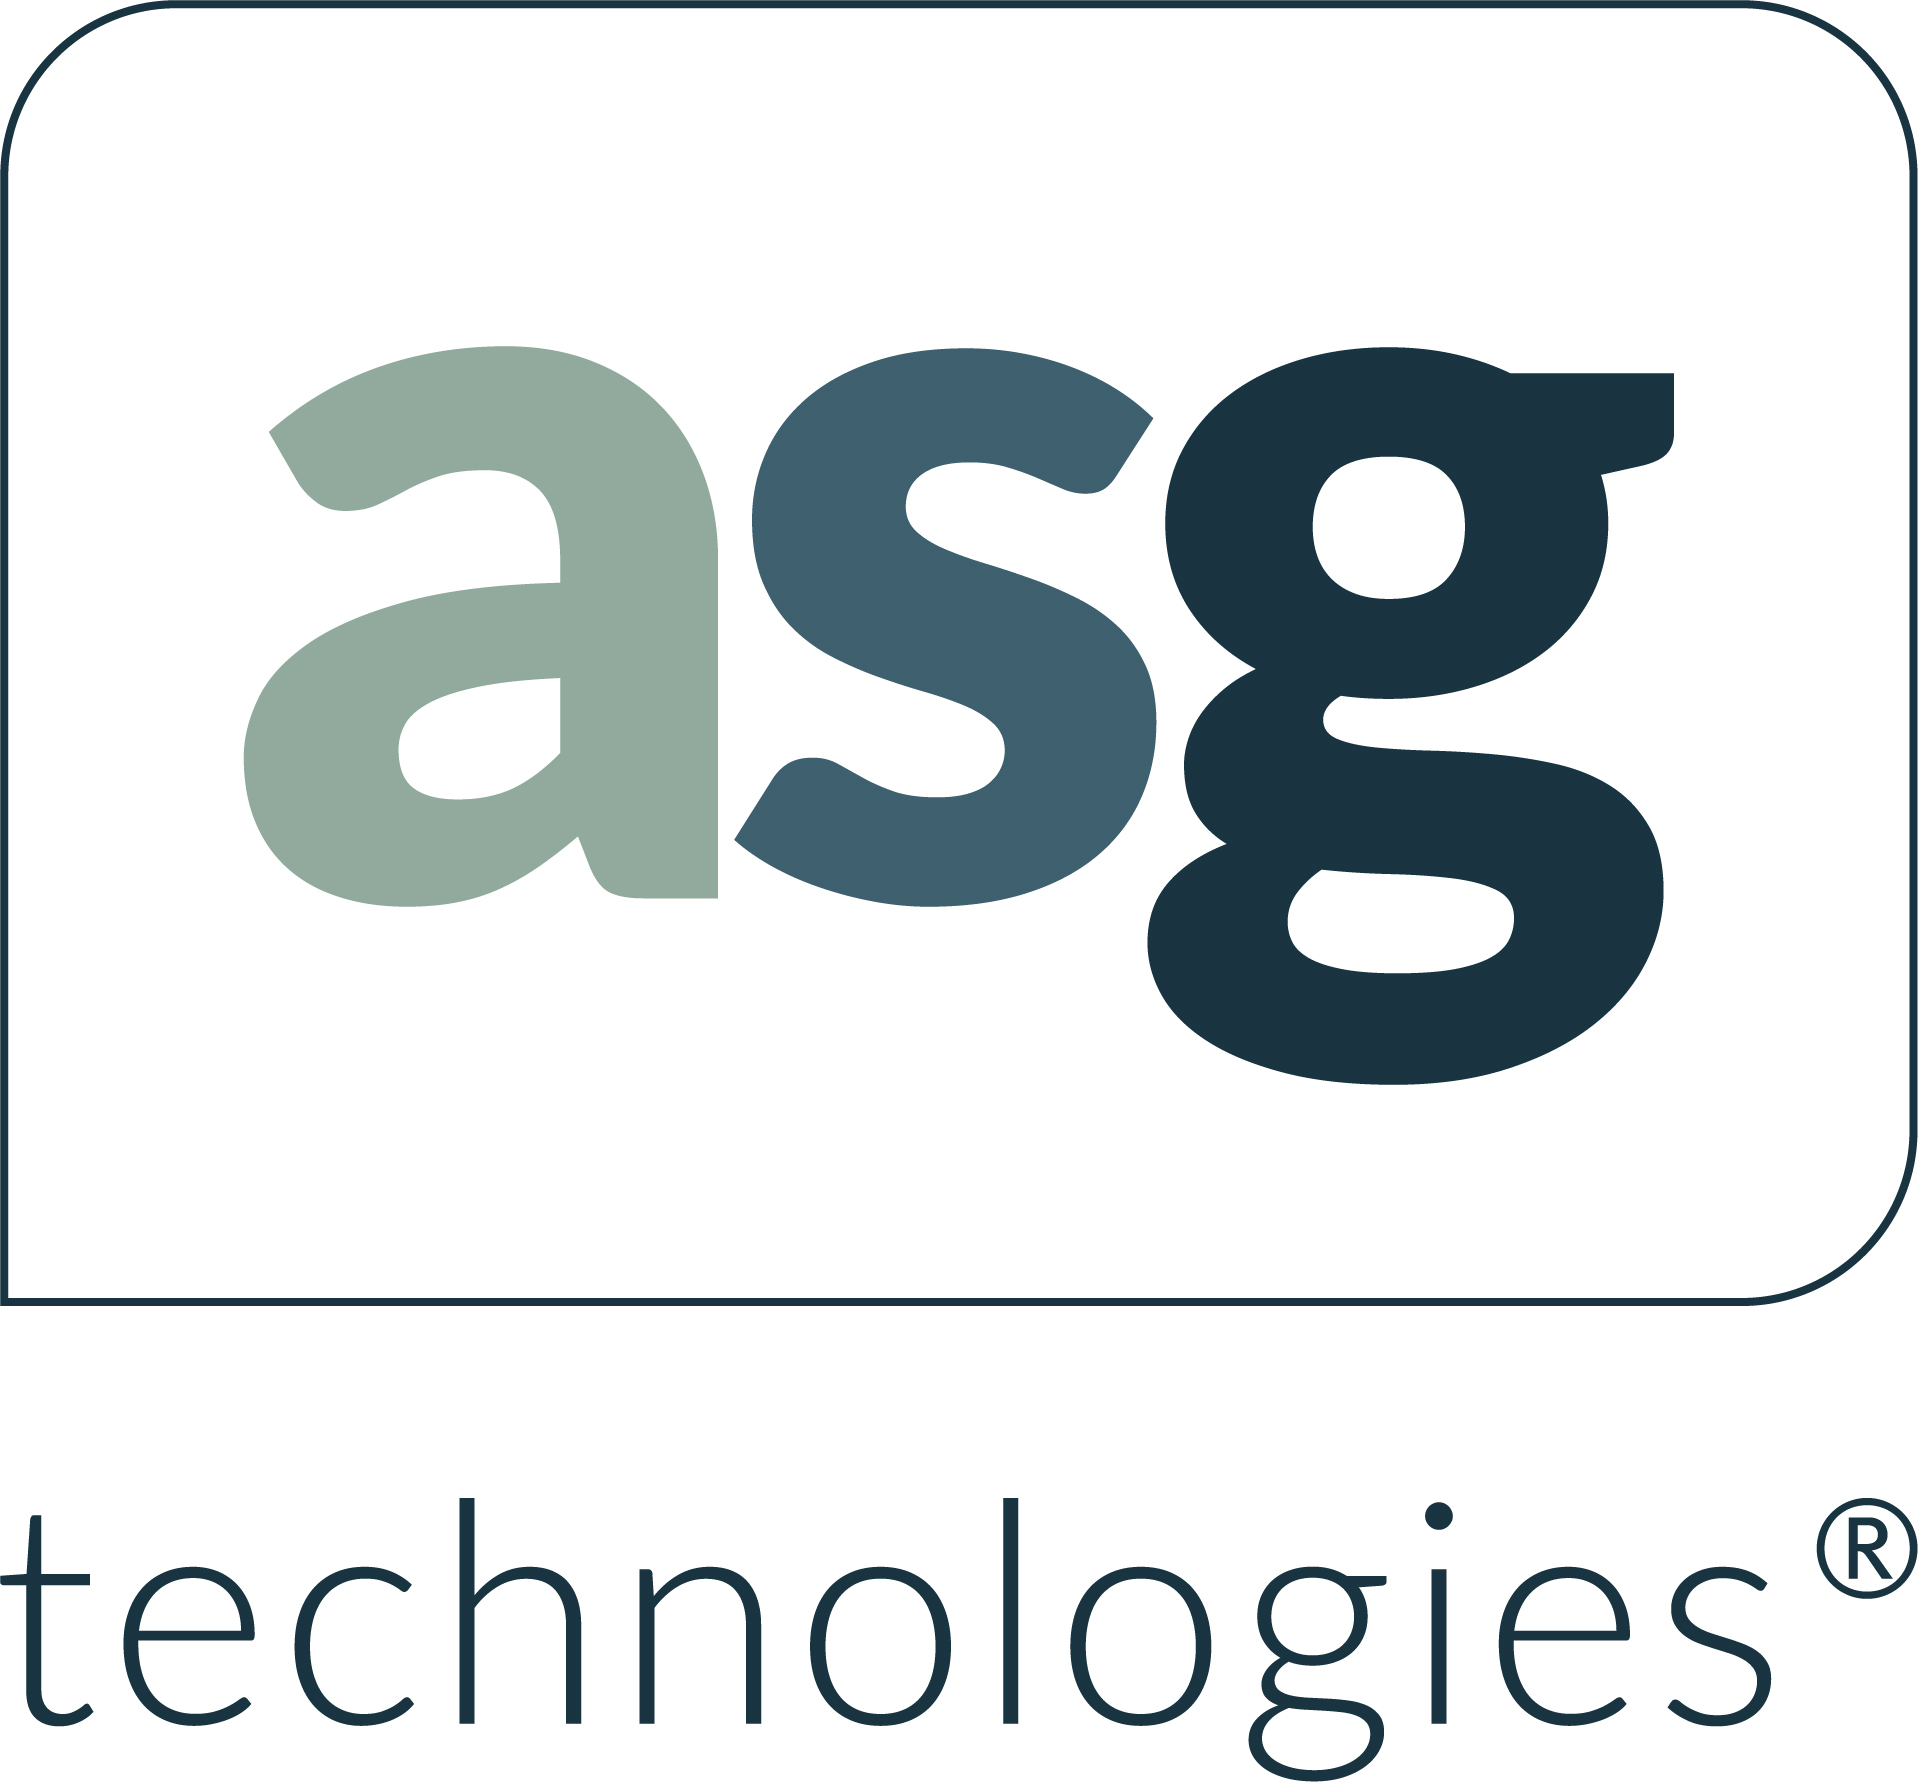 ASG 2019 logo